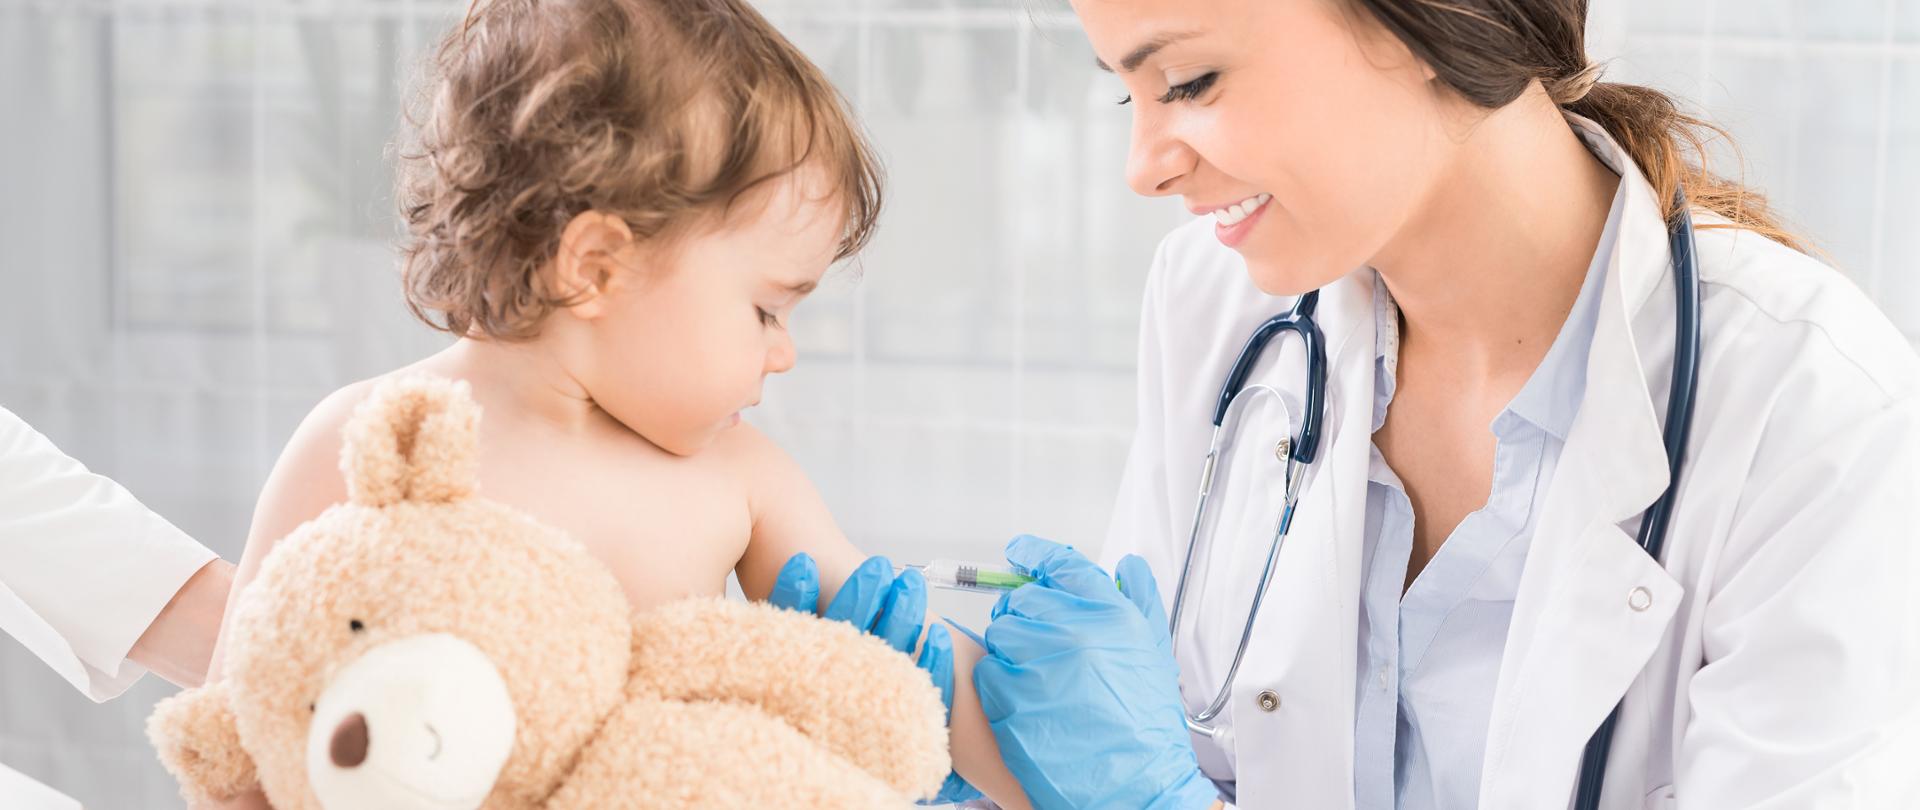 Na zdjęciu młoda uśmiechnięta lekarka szczepi małe dziecko, które trzyma pluszowego misia.